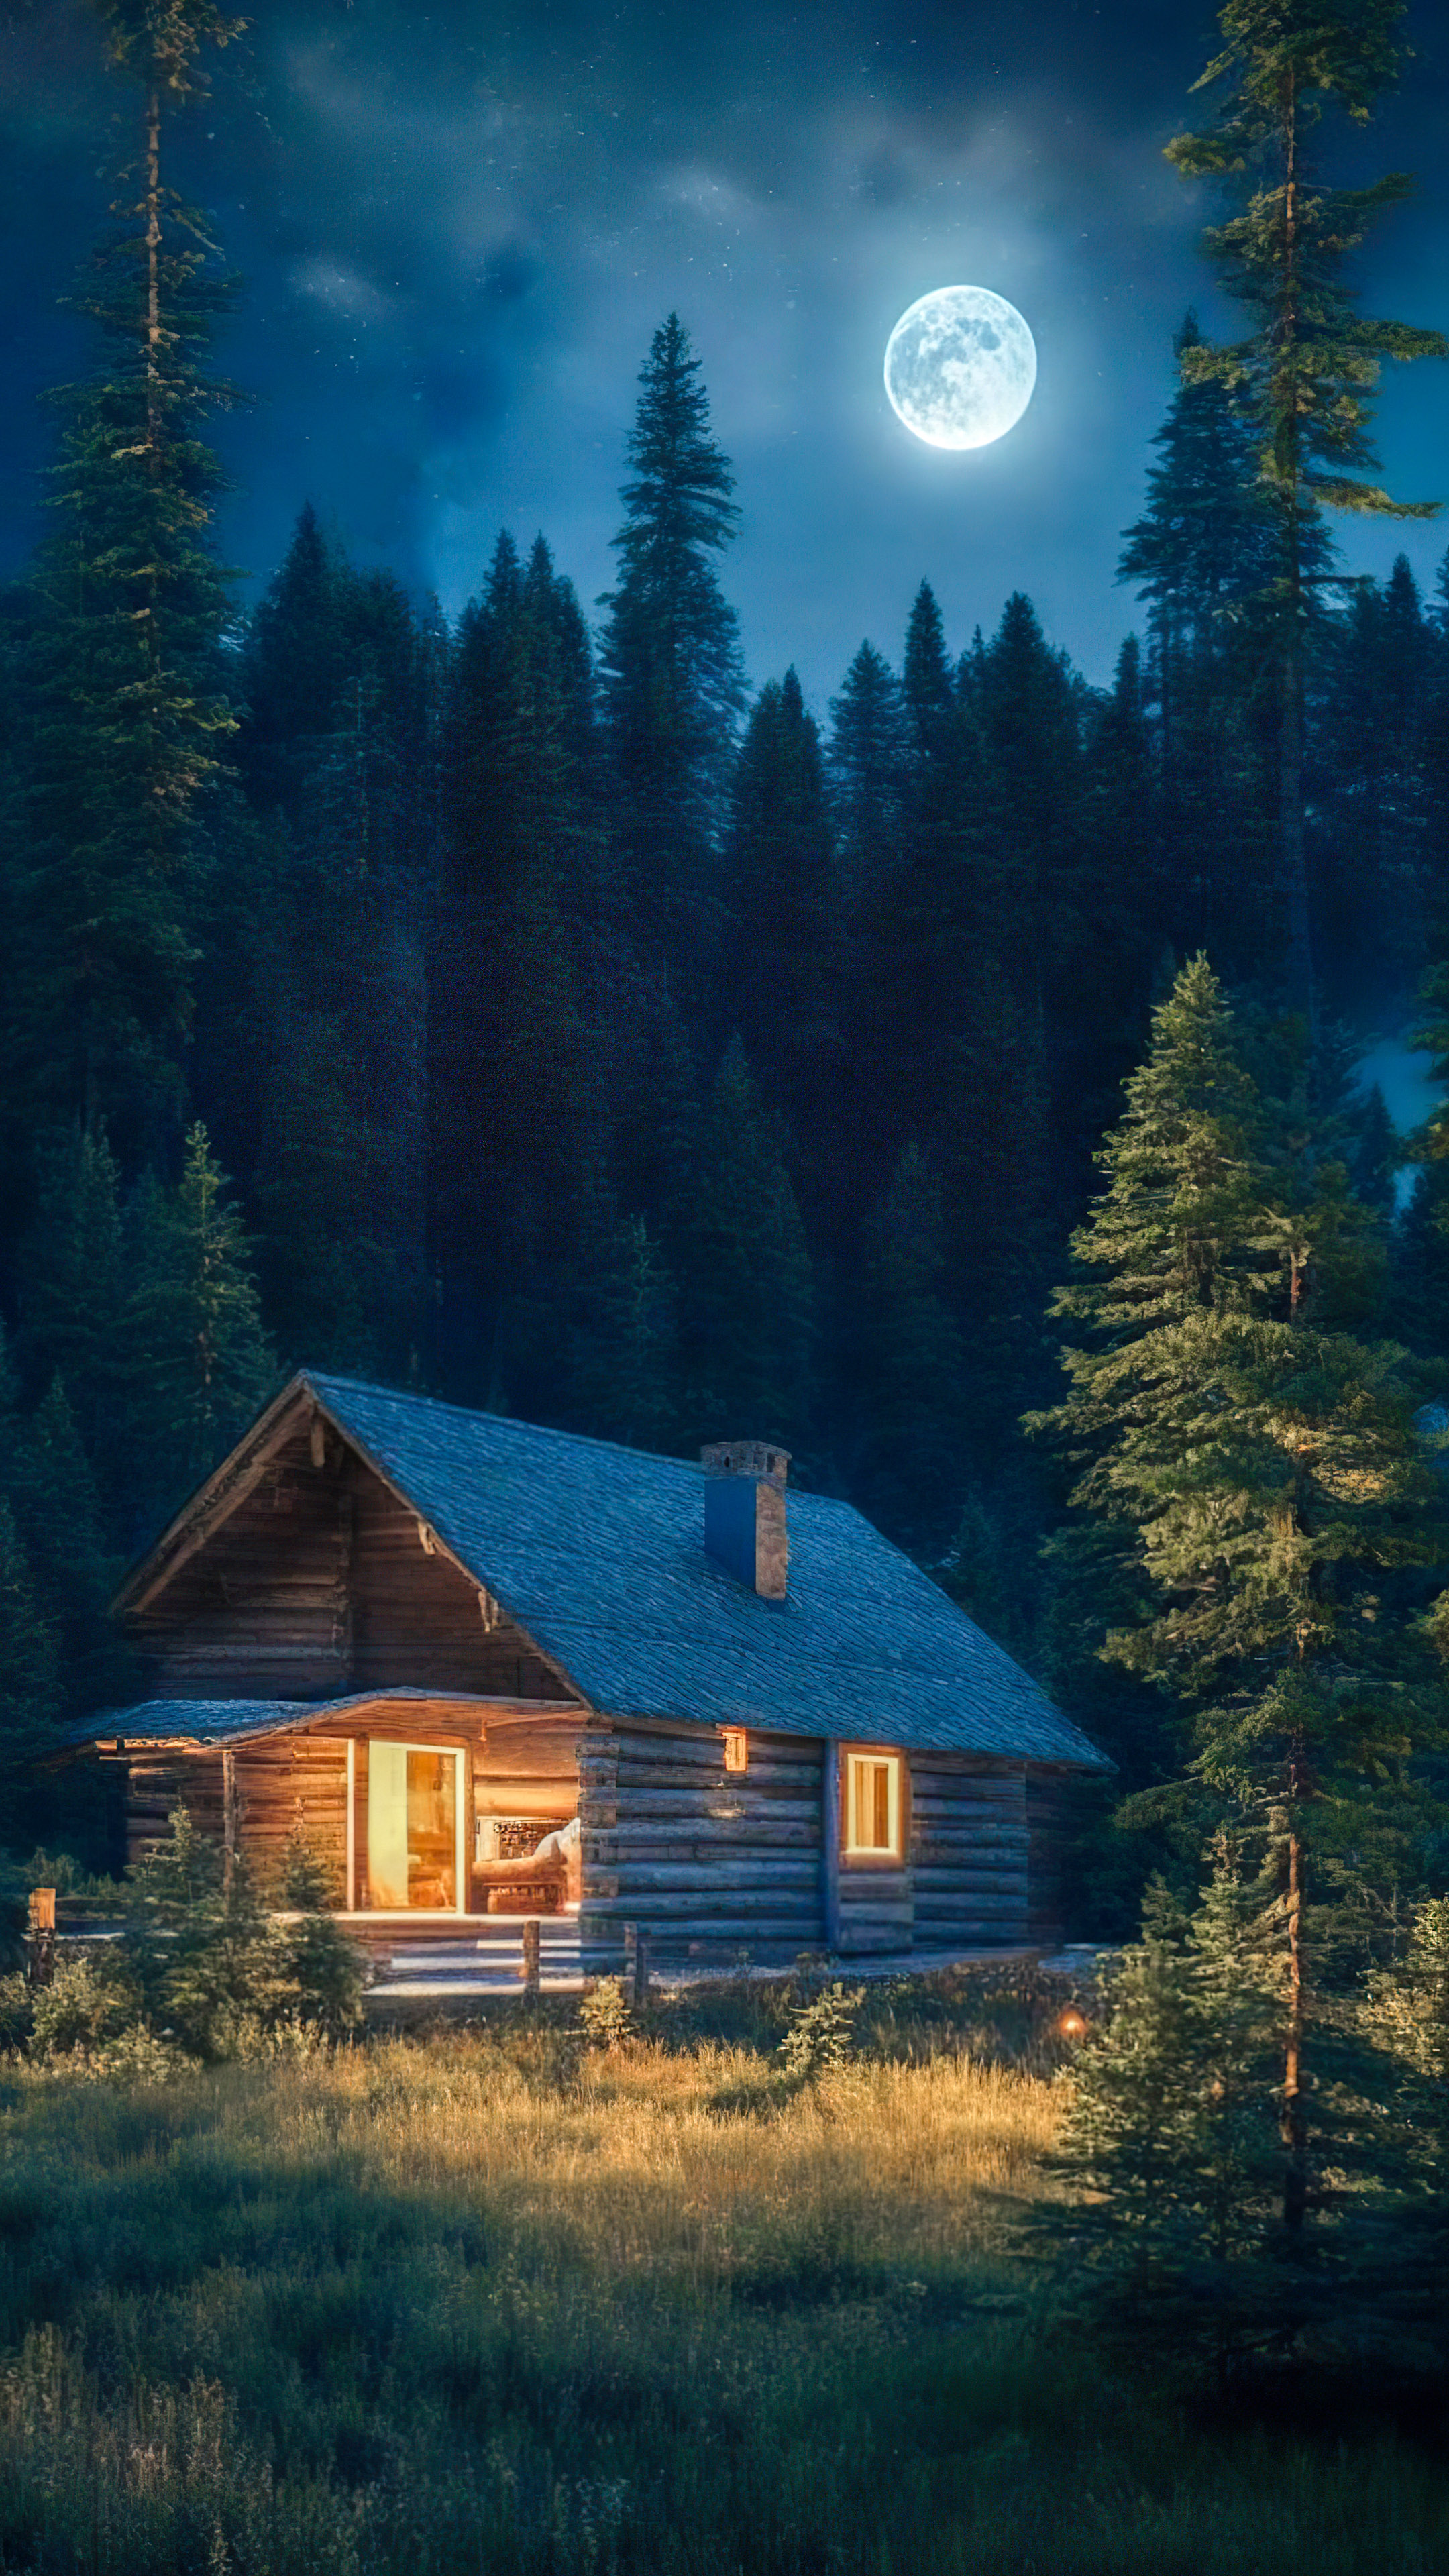 Embrassez la sérénité de notre fond d'écran nocturne de paysages, dépeignant une cabane confortable nichée parmi les pins, baignée dans la douce lumière d'une pleine lune.